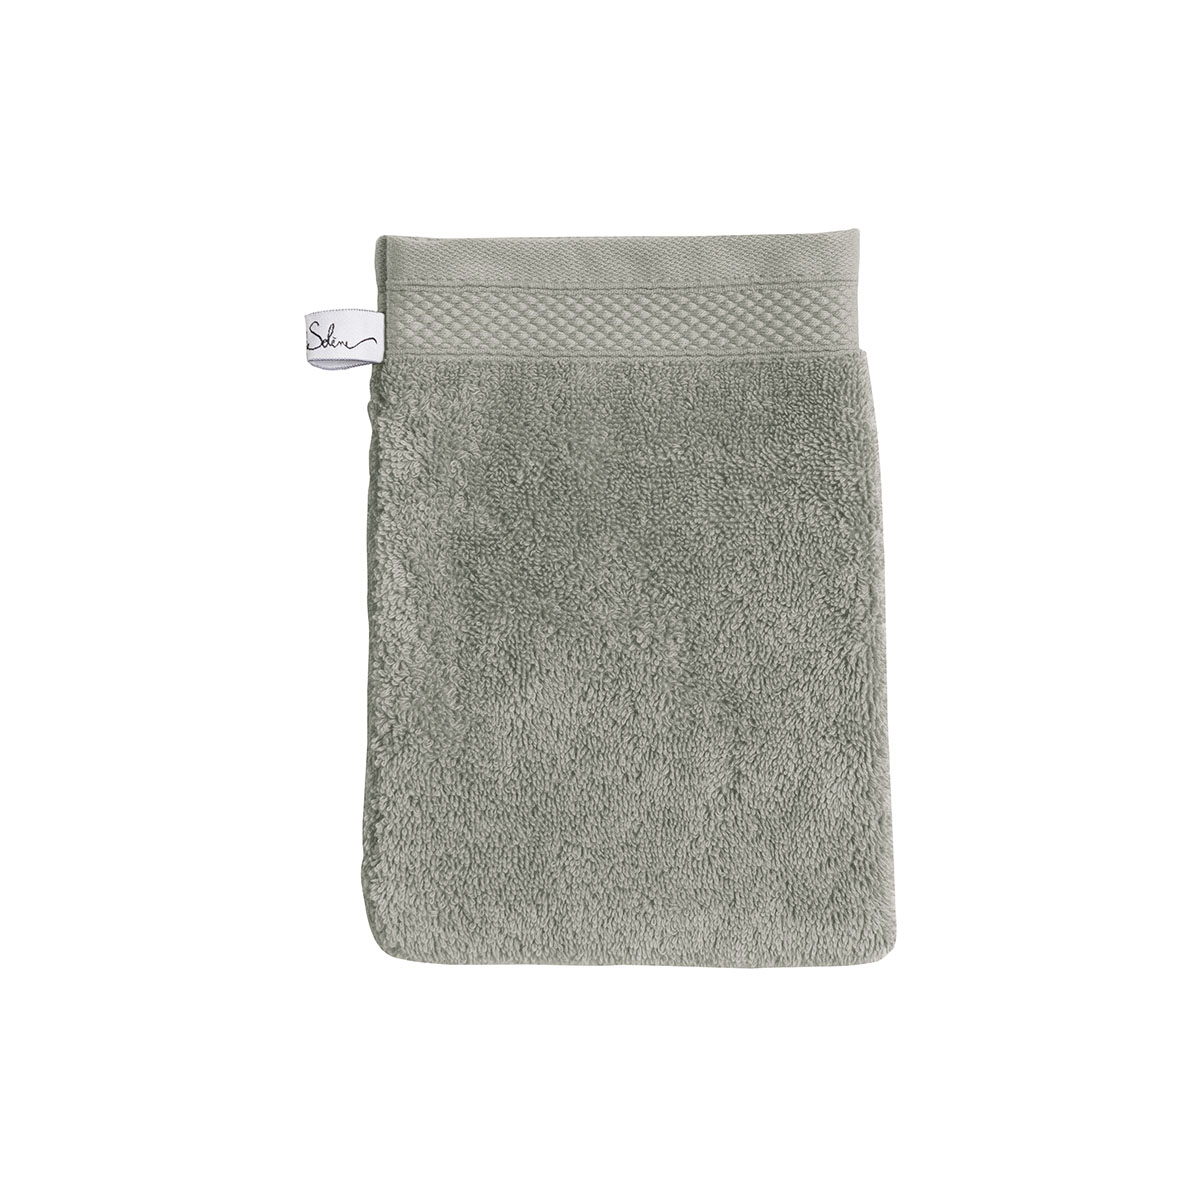 gant de toilette coton lichen 16x22 cm